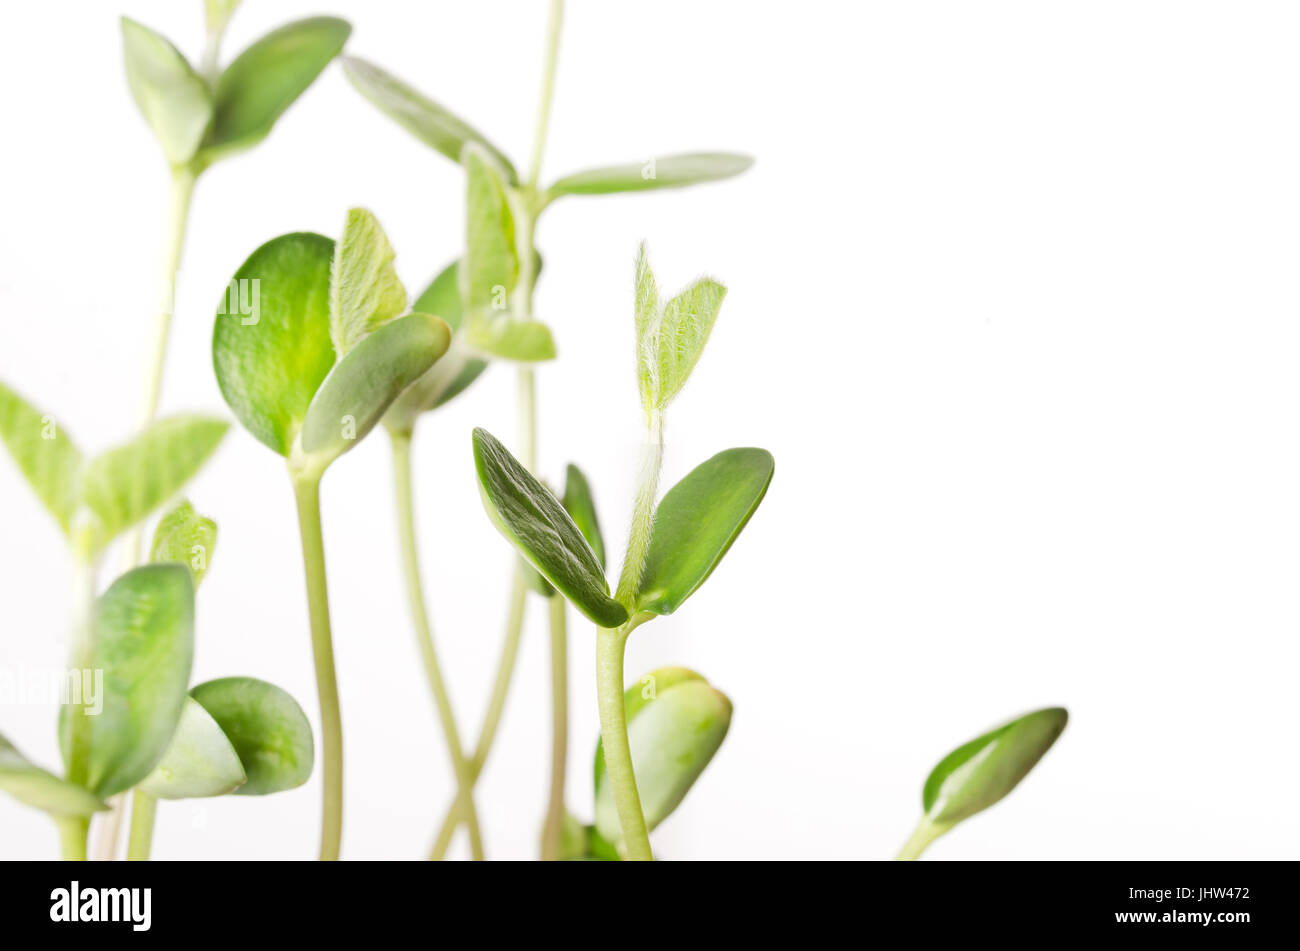 Les semis de soja plus blanc, libre. Les jeunes plantes de soja, les germes et les Leafs ont germé de Glycine max, une légumineuse, d'oléagineux et de légumineuses. Les cotylédons. Banque D'Images